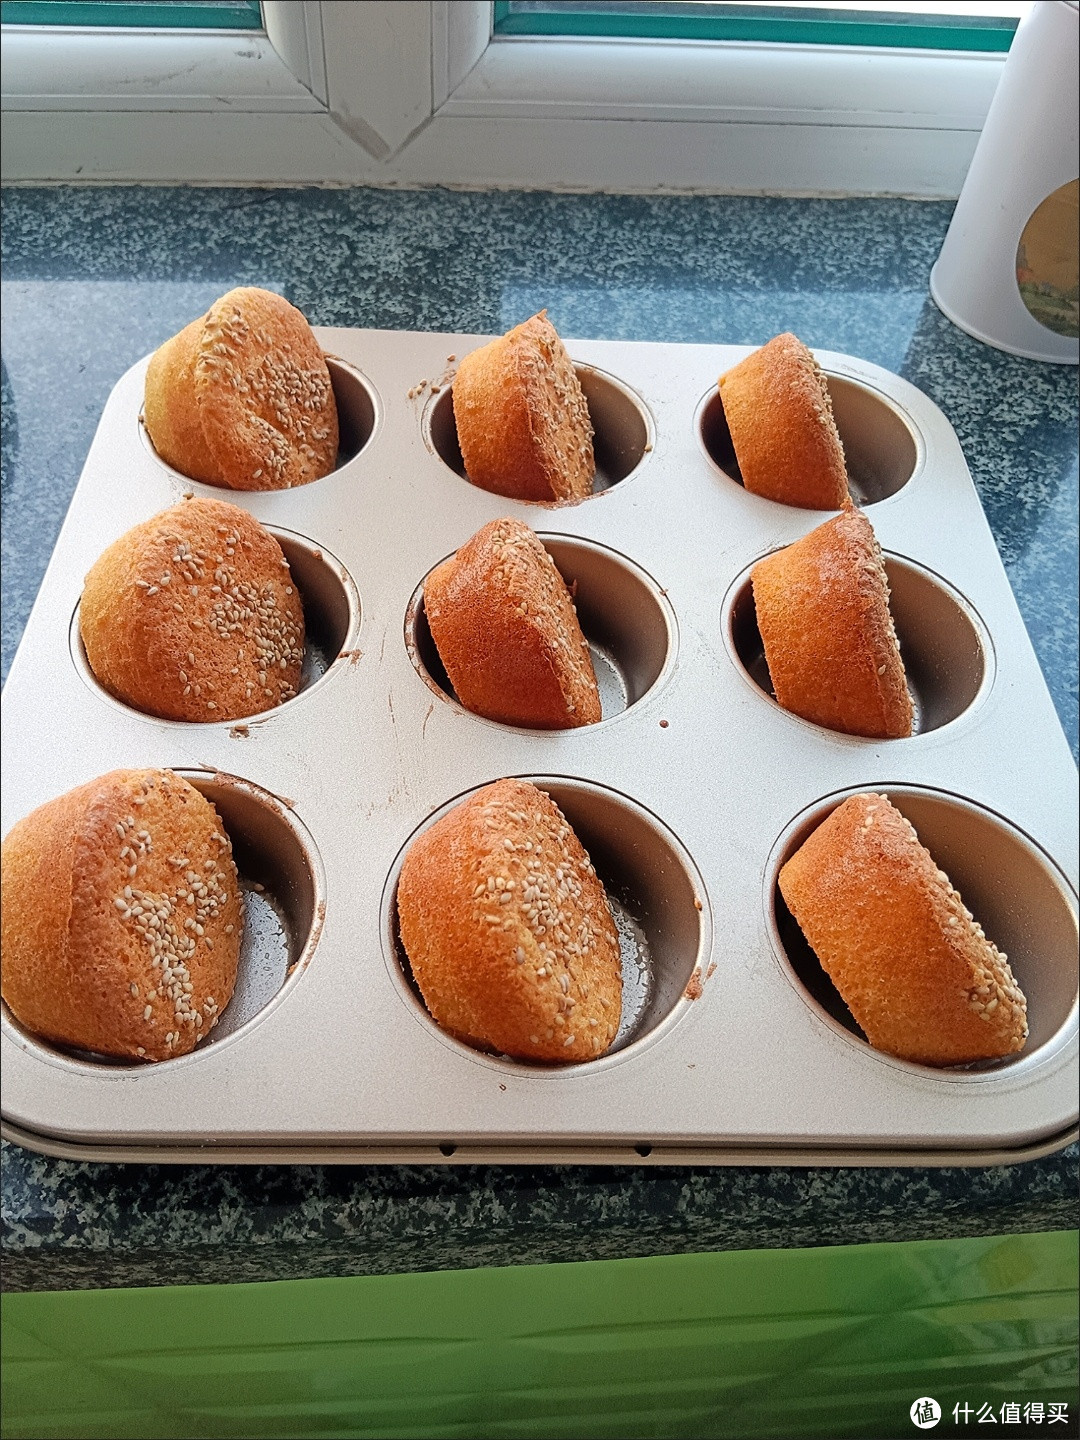 烘焙工具之魅力：12连蛋糕模具麦芬甜甜圈6纸杯9马芬烤箱用烘培小烤盘